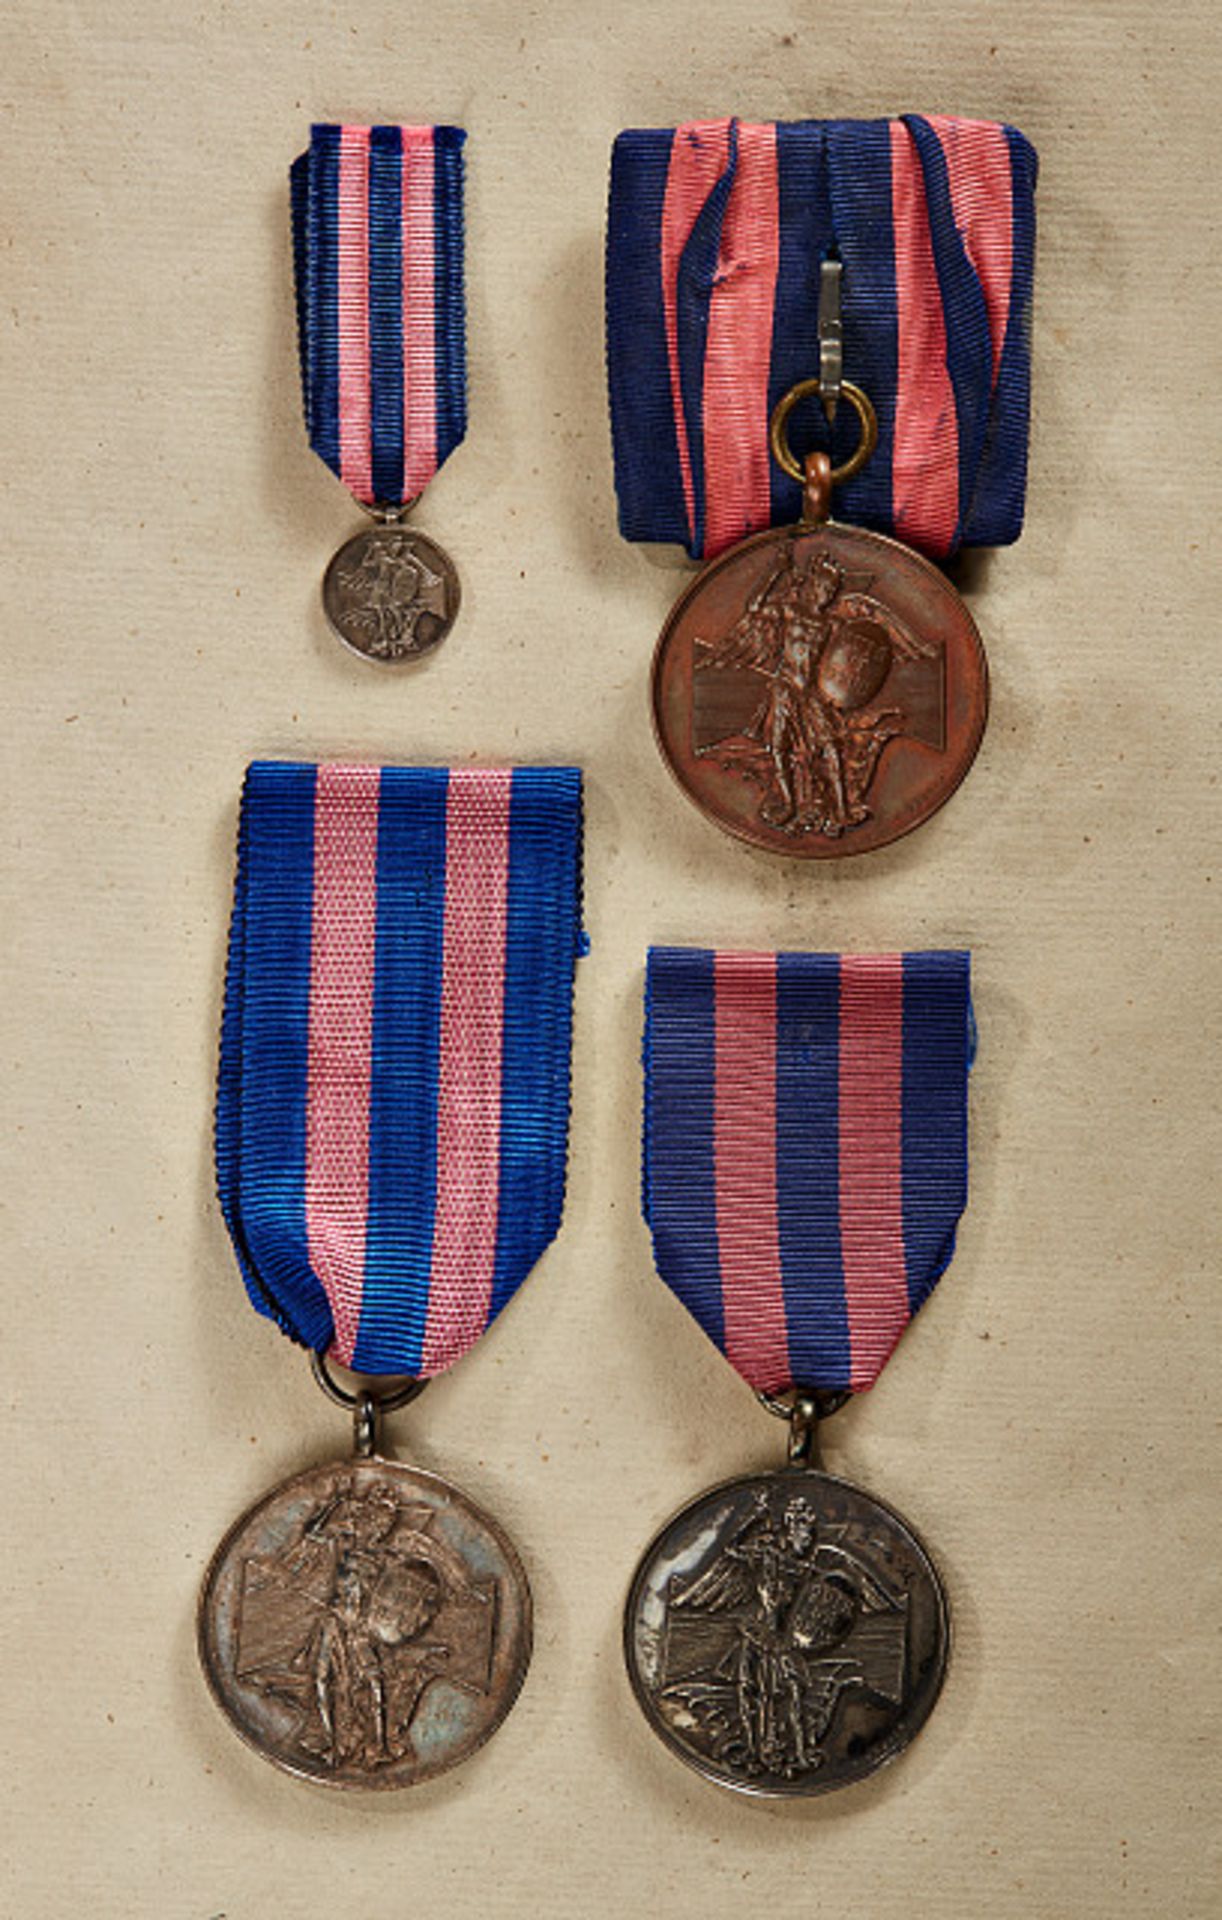 KÖNIGREICH BAYERN - VERDIENSTORDEN VOM HEILIGEN MICHAEL : Silberne Medaille, 1887 - 1918 Silber,